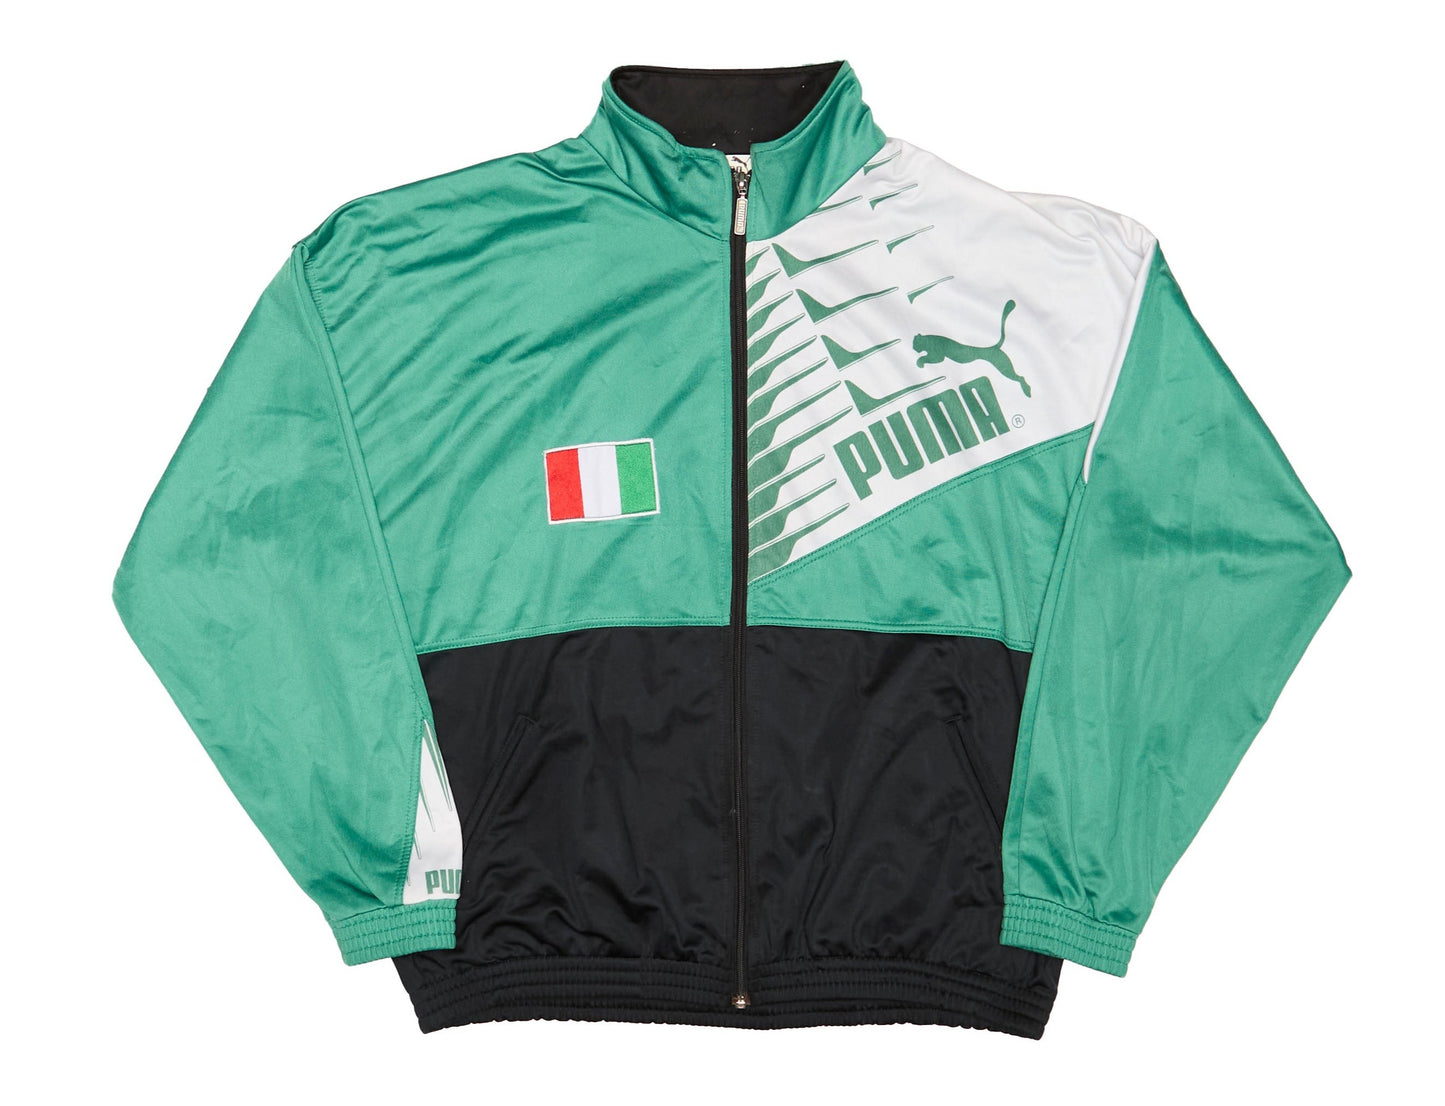 Mens Puma Italia Track Jacket - M